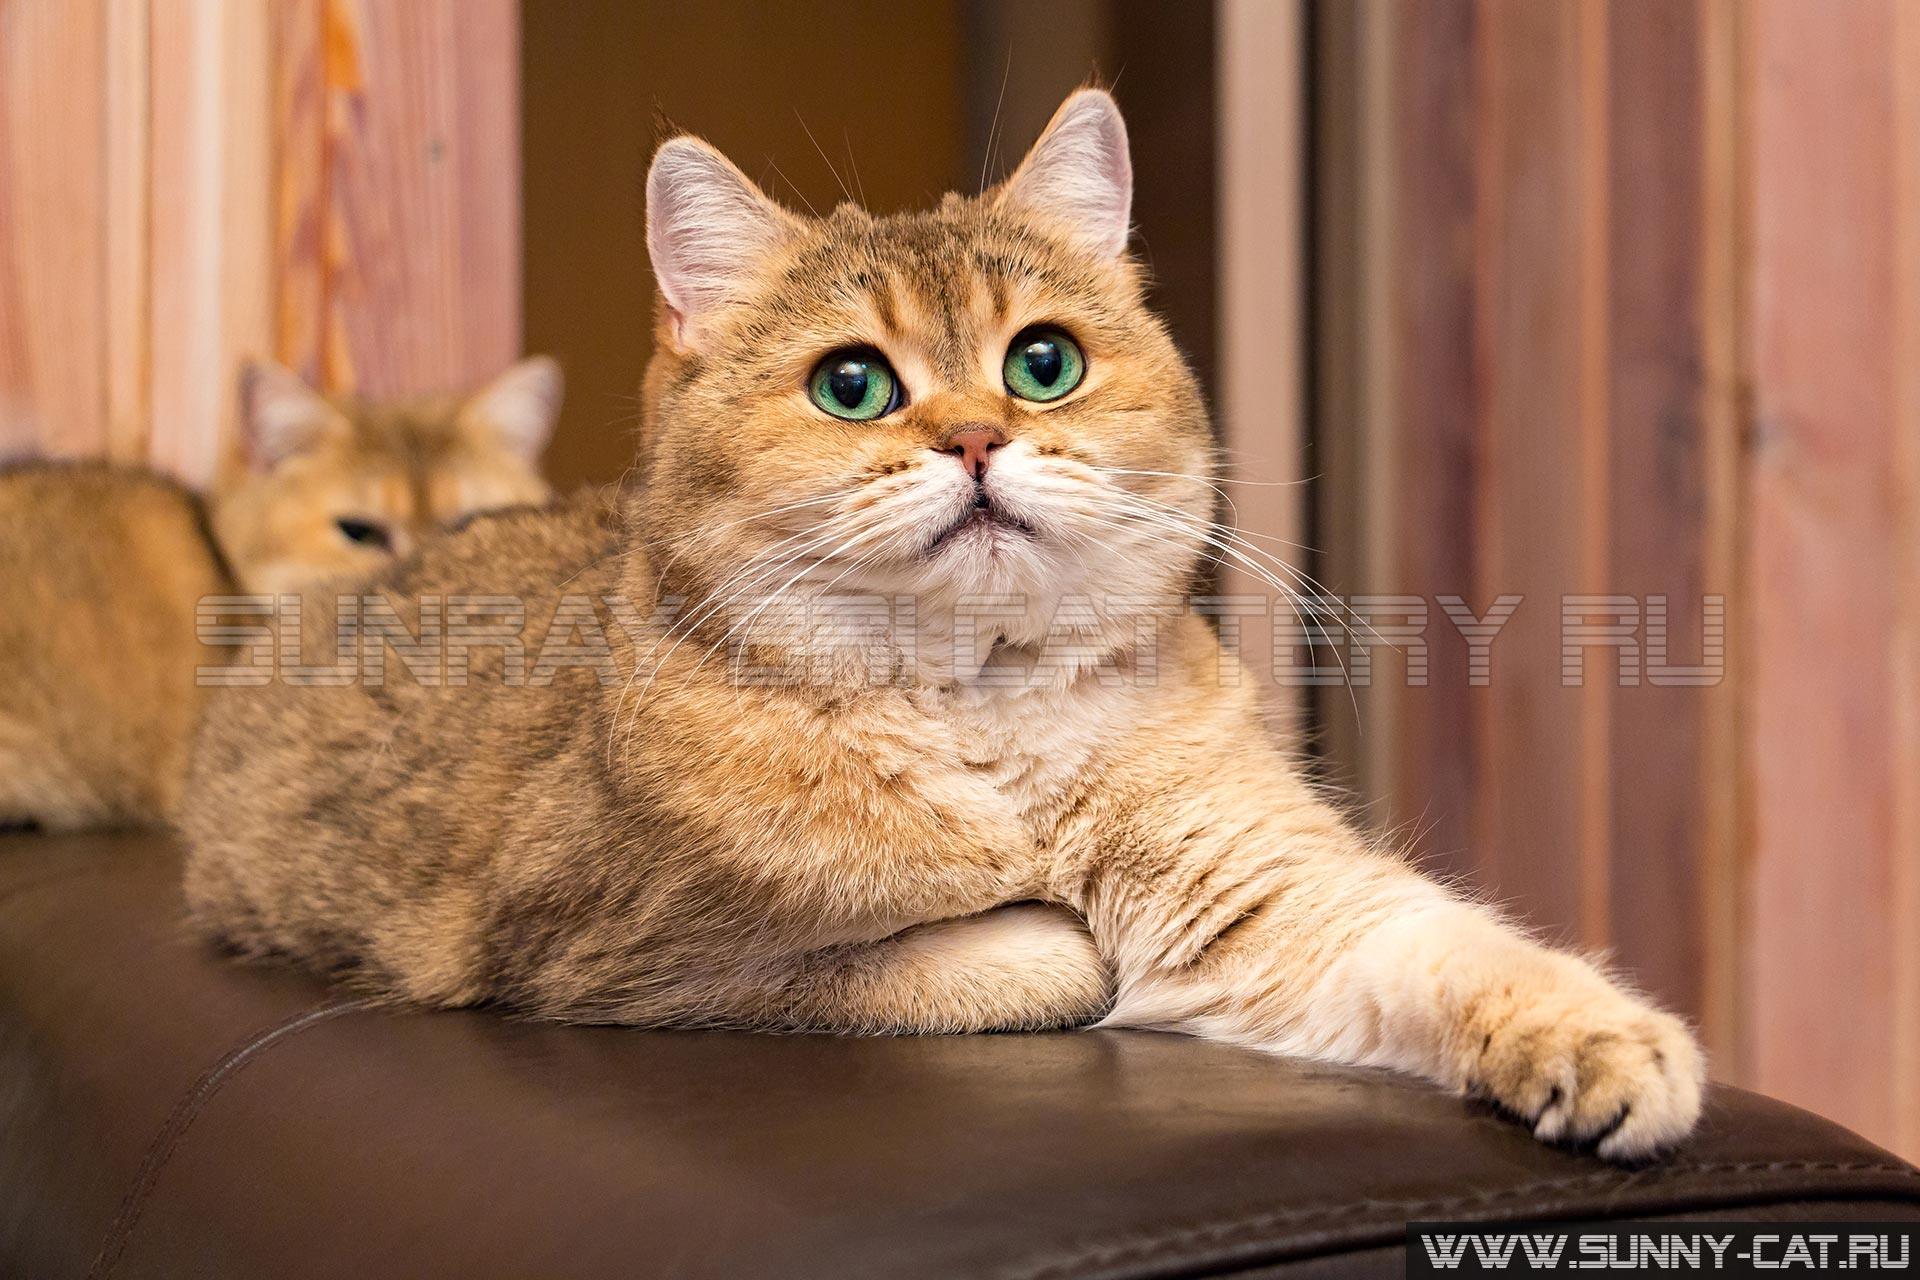 Кошка с зелеными глазами - очаровательная британская золотая кошка с насыщенными зелеными глазами лежит на спинке дивана выставив лапу вперед и смотря вверх